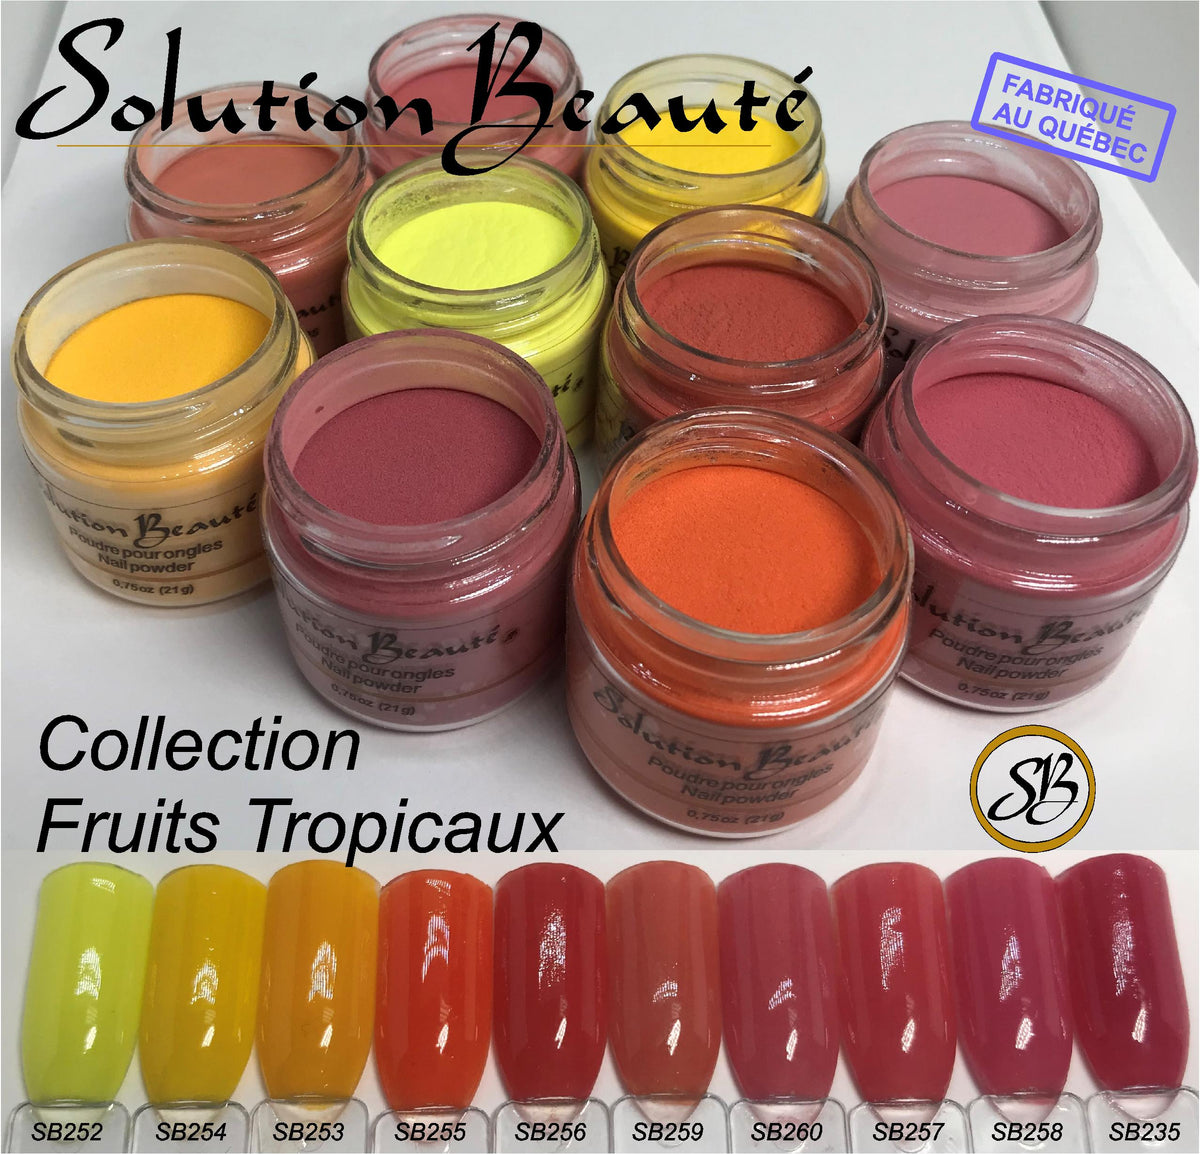 Poudre Solution Beauté Mini Collection Fruits Tropicaux